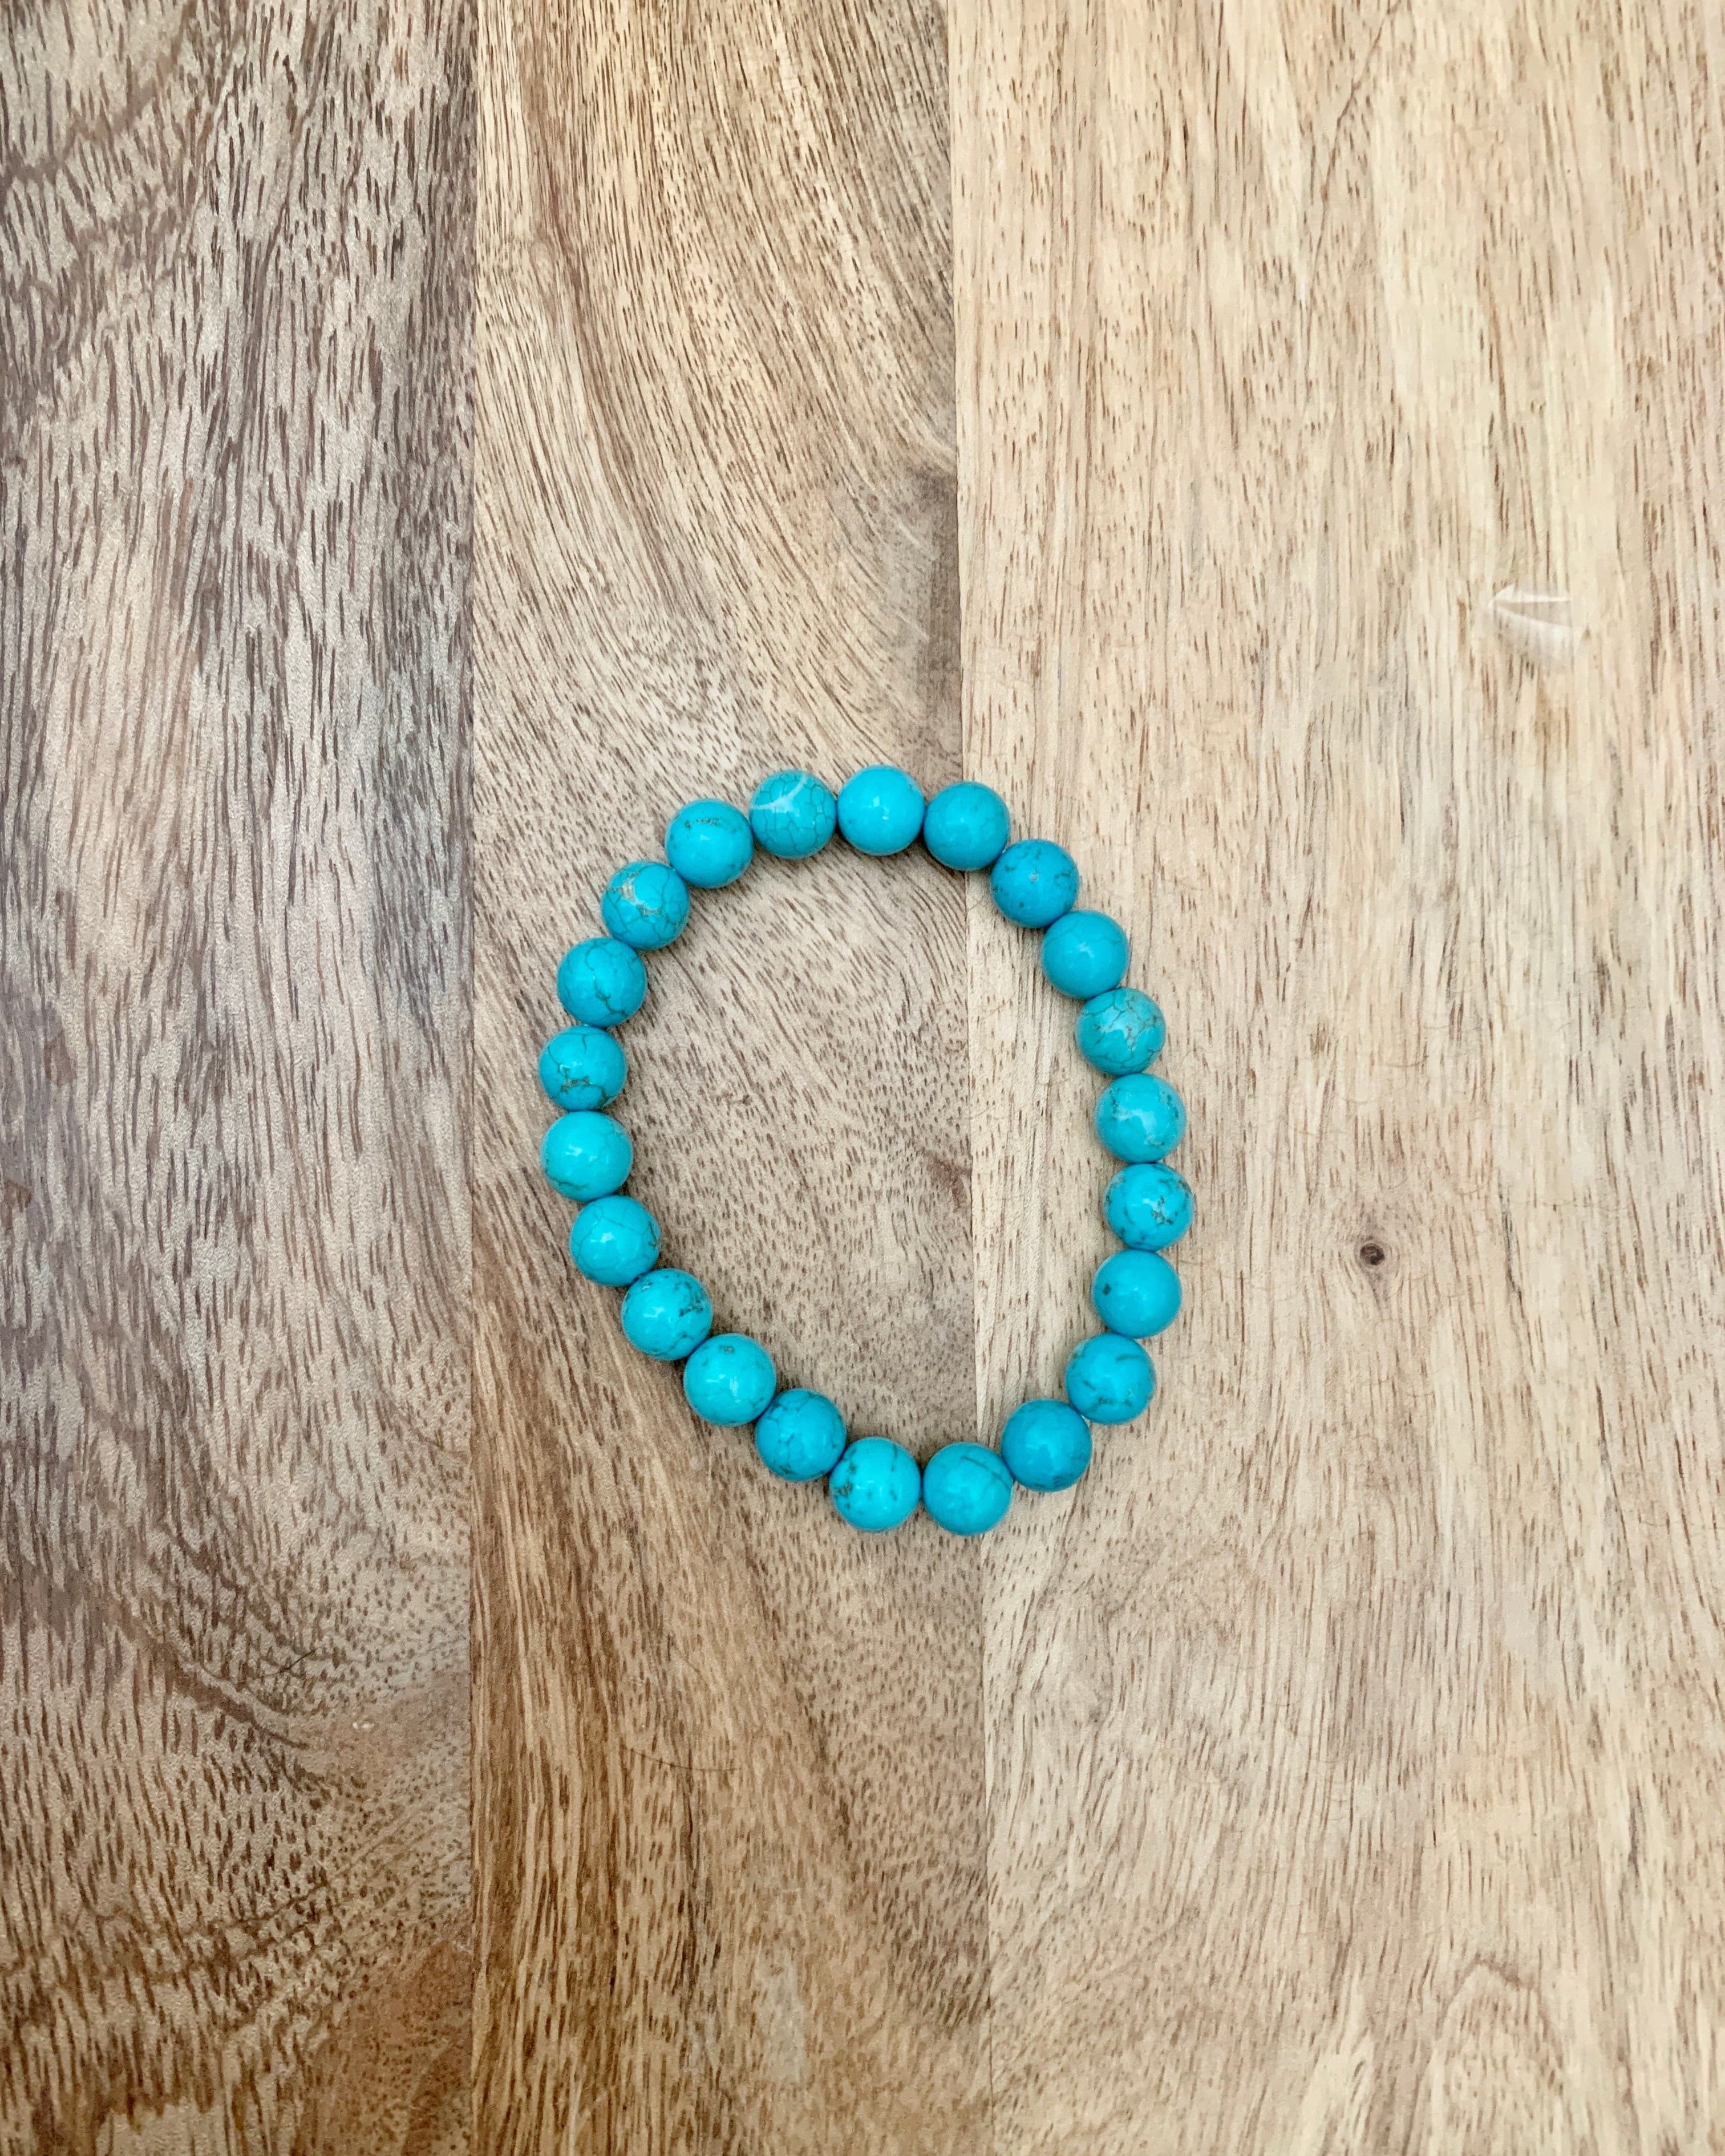 Turquoise Bead Bracelet.